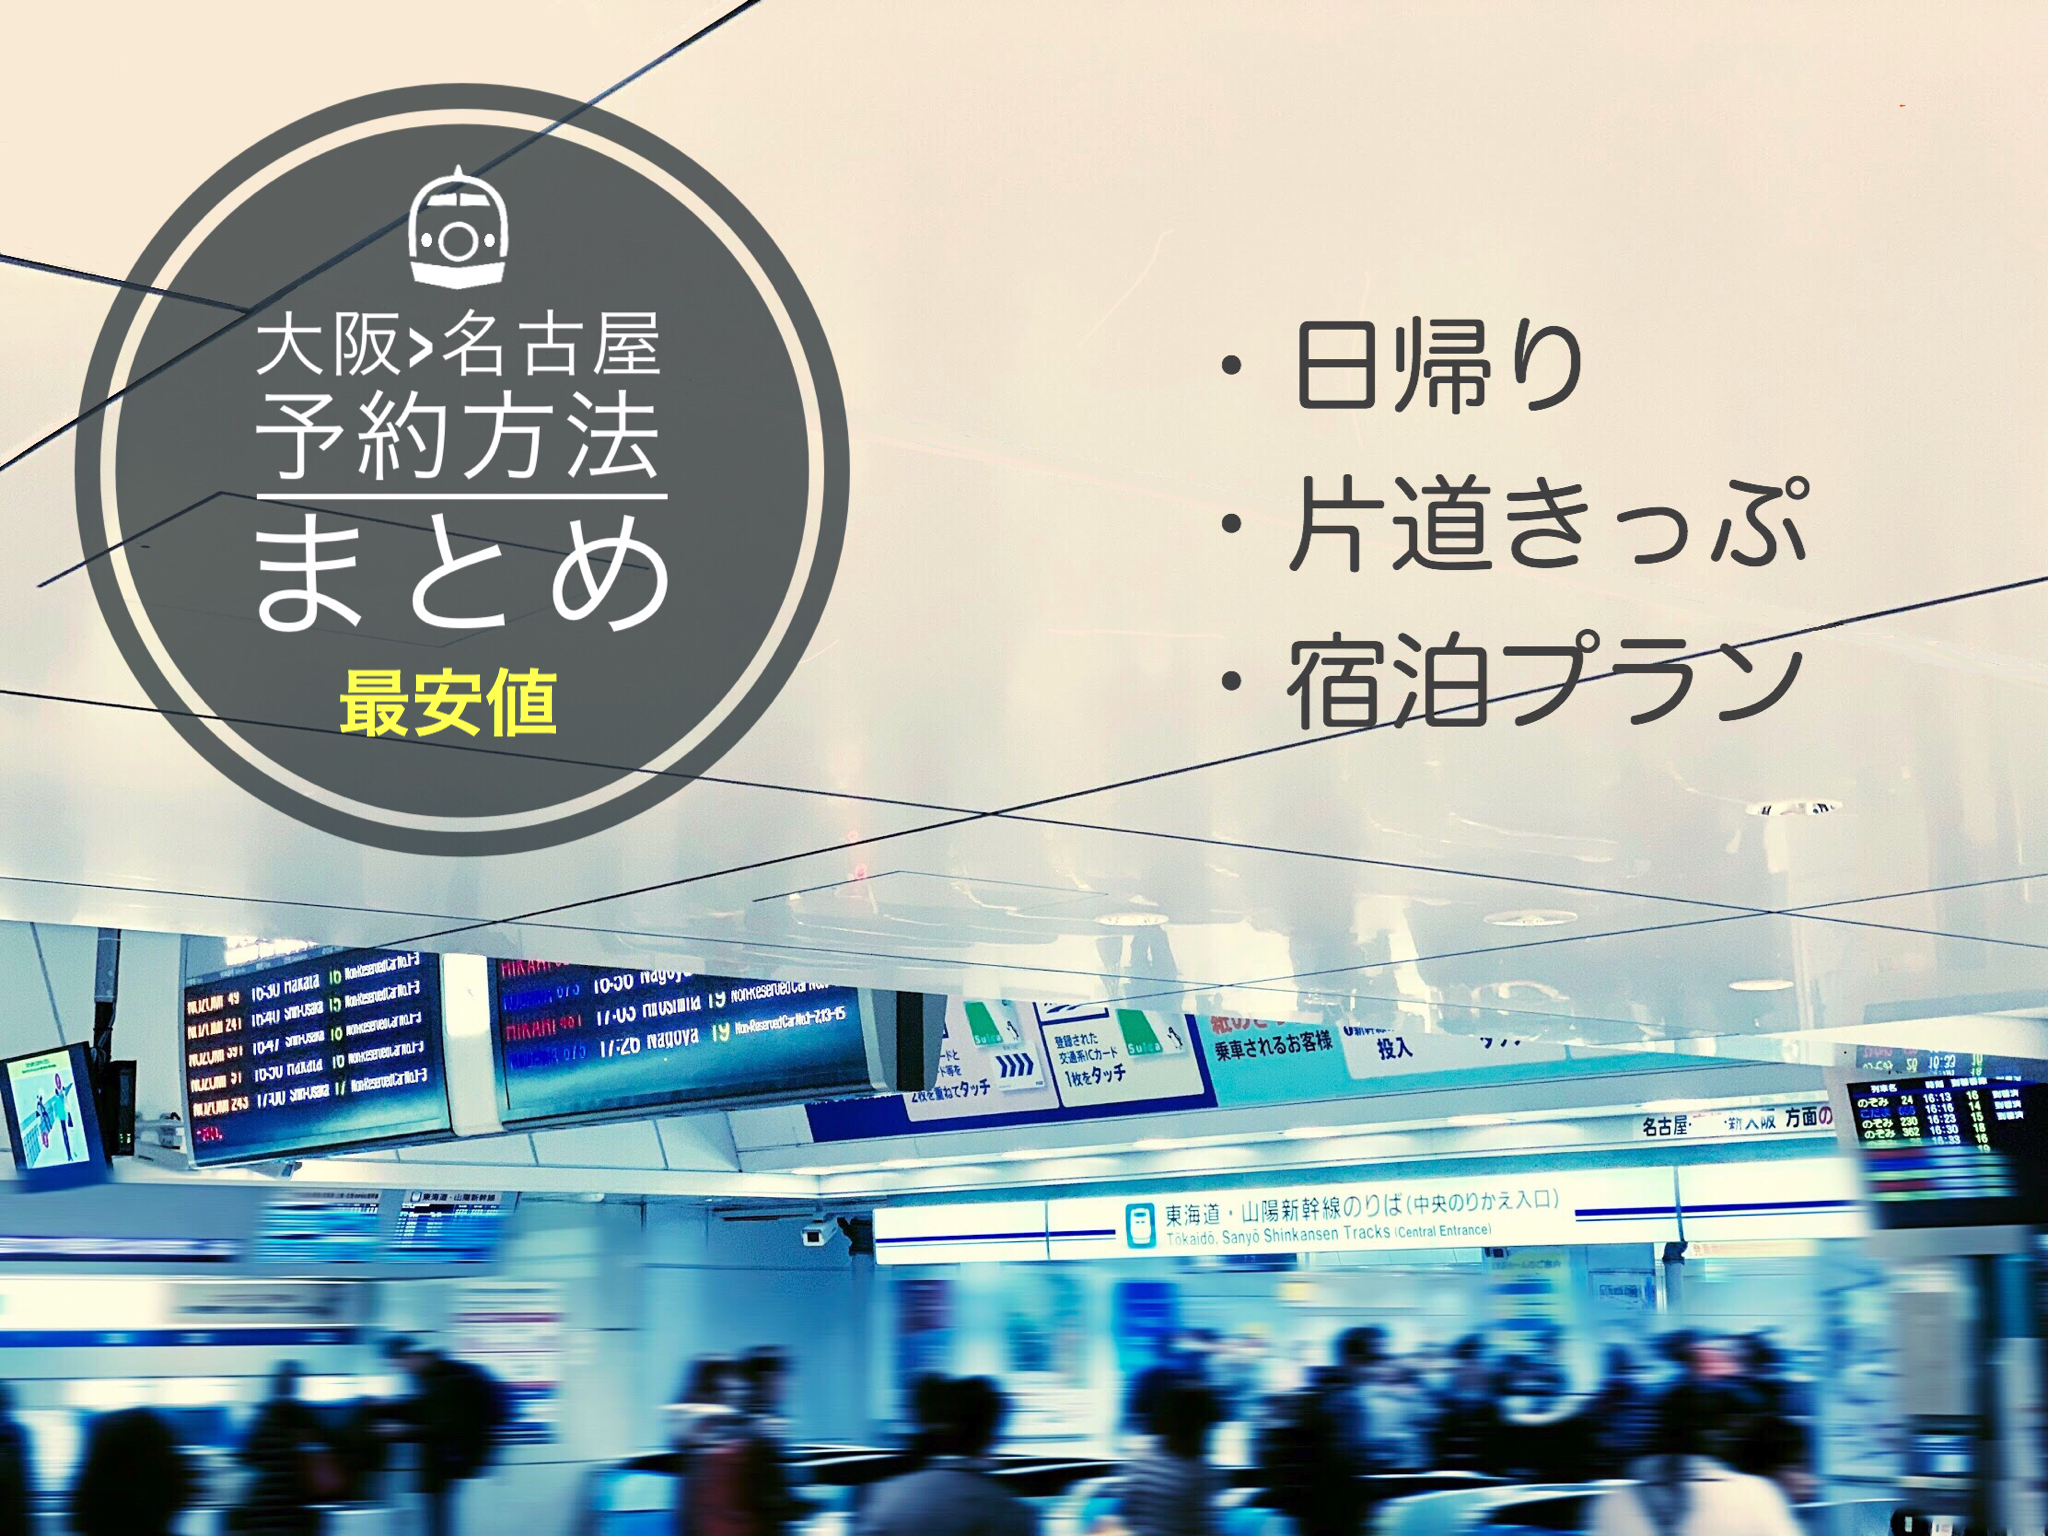 名古屋 大阪新幹線の料金 時間は 格安チケット予約方法まとめ 新幹線ハック